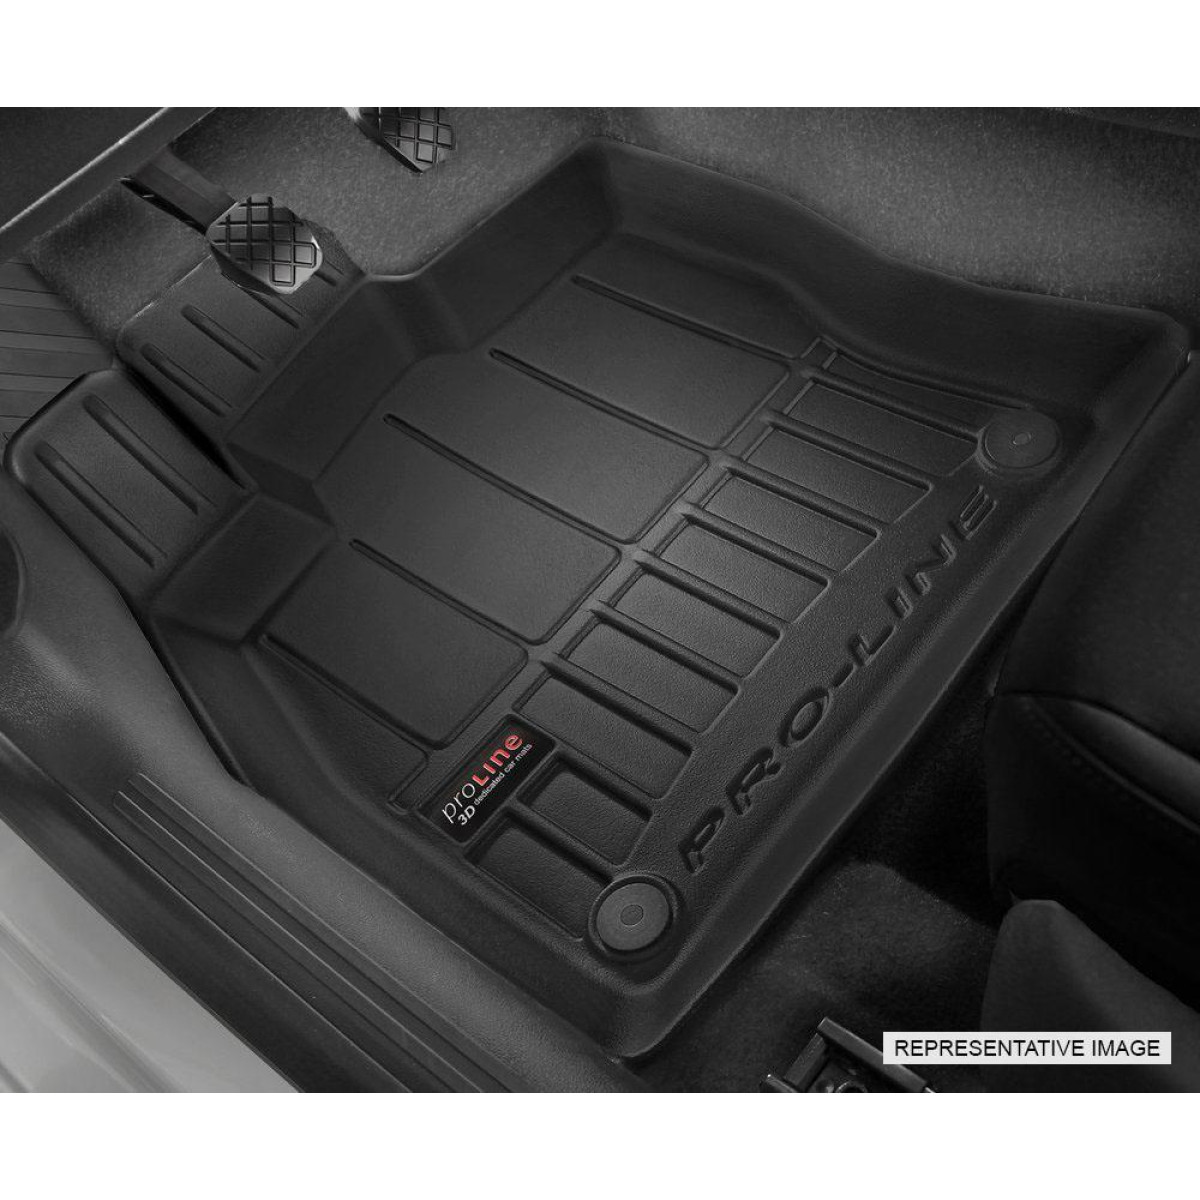 Guminiai kilimėliai Proline Audi Q8 nuo 2018m. / paaukštintais kraštais